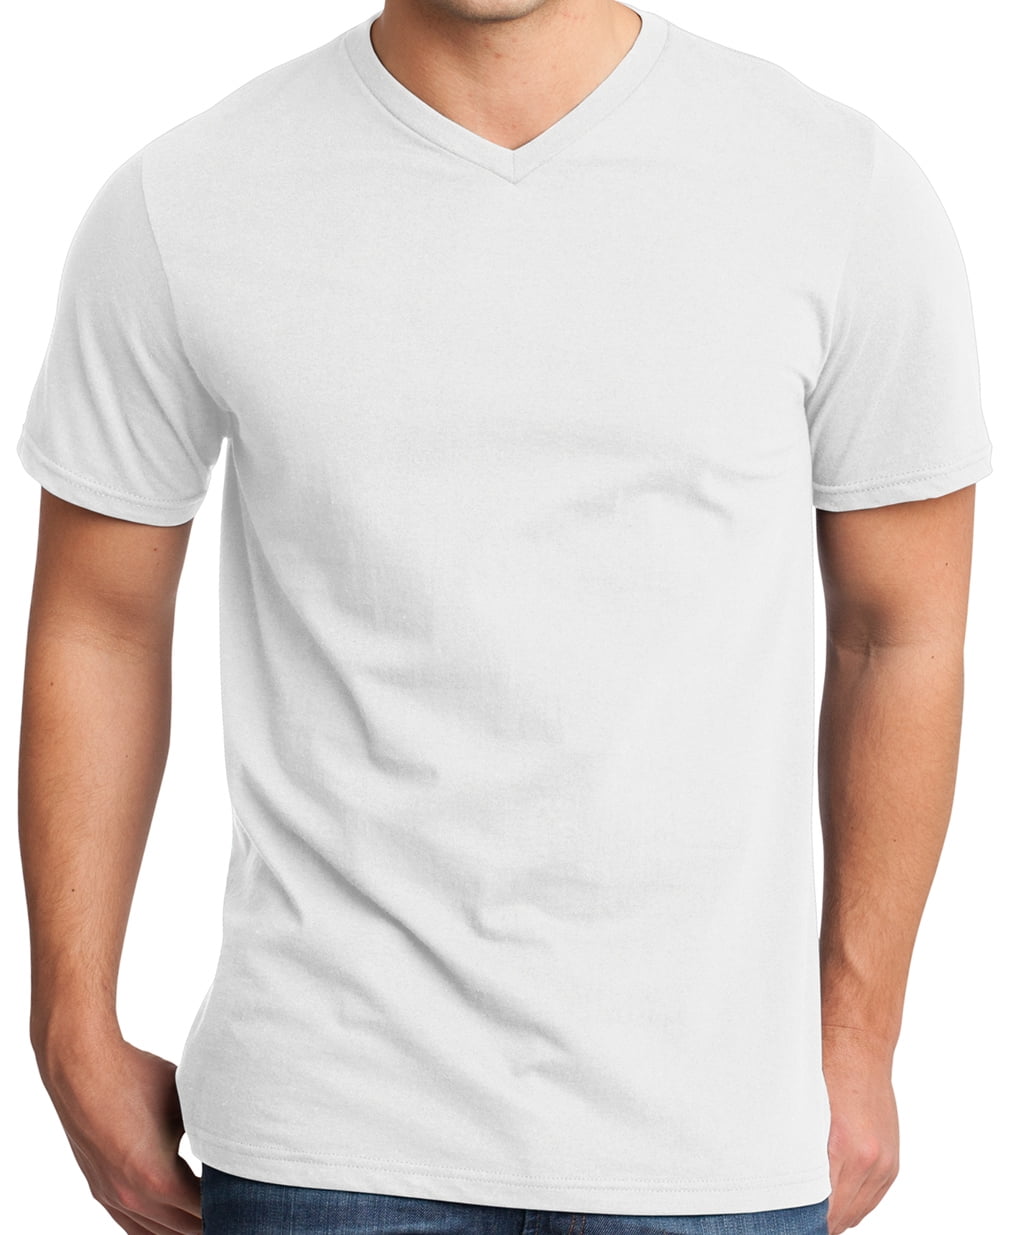 inval Polijsten de wind is sterk Mens Lightweight 100% Cotton V-neck Tee Shirt, White, 4XL - Walmart.com